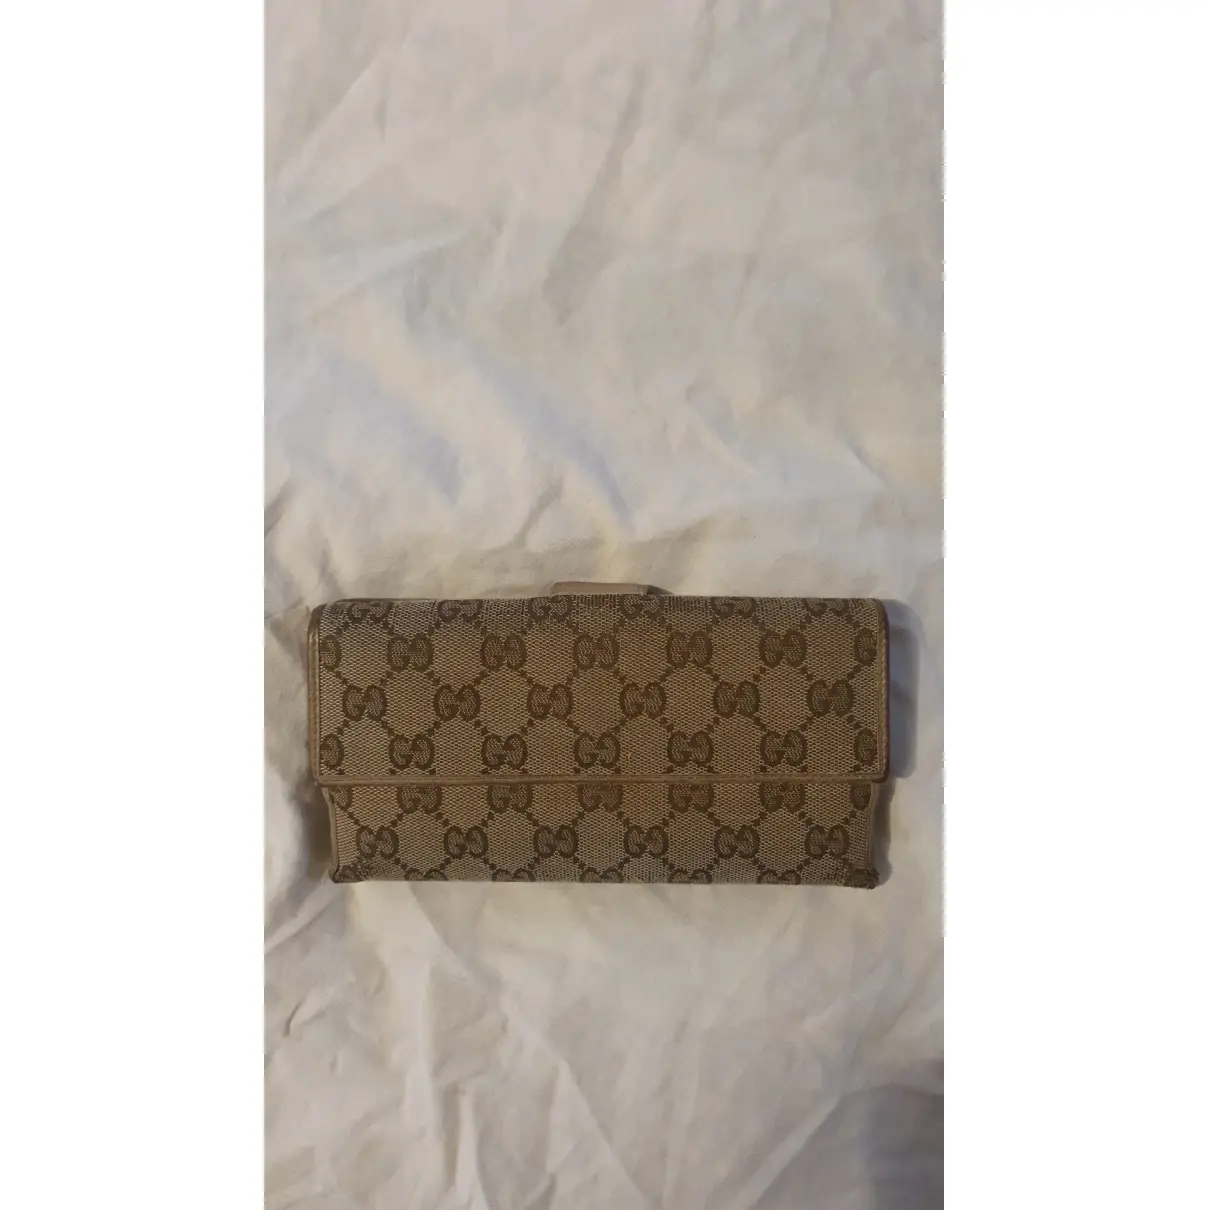 Buy Gucci Cloth wallet online